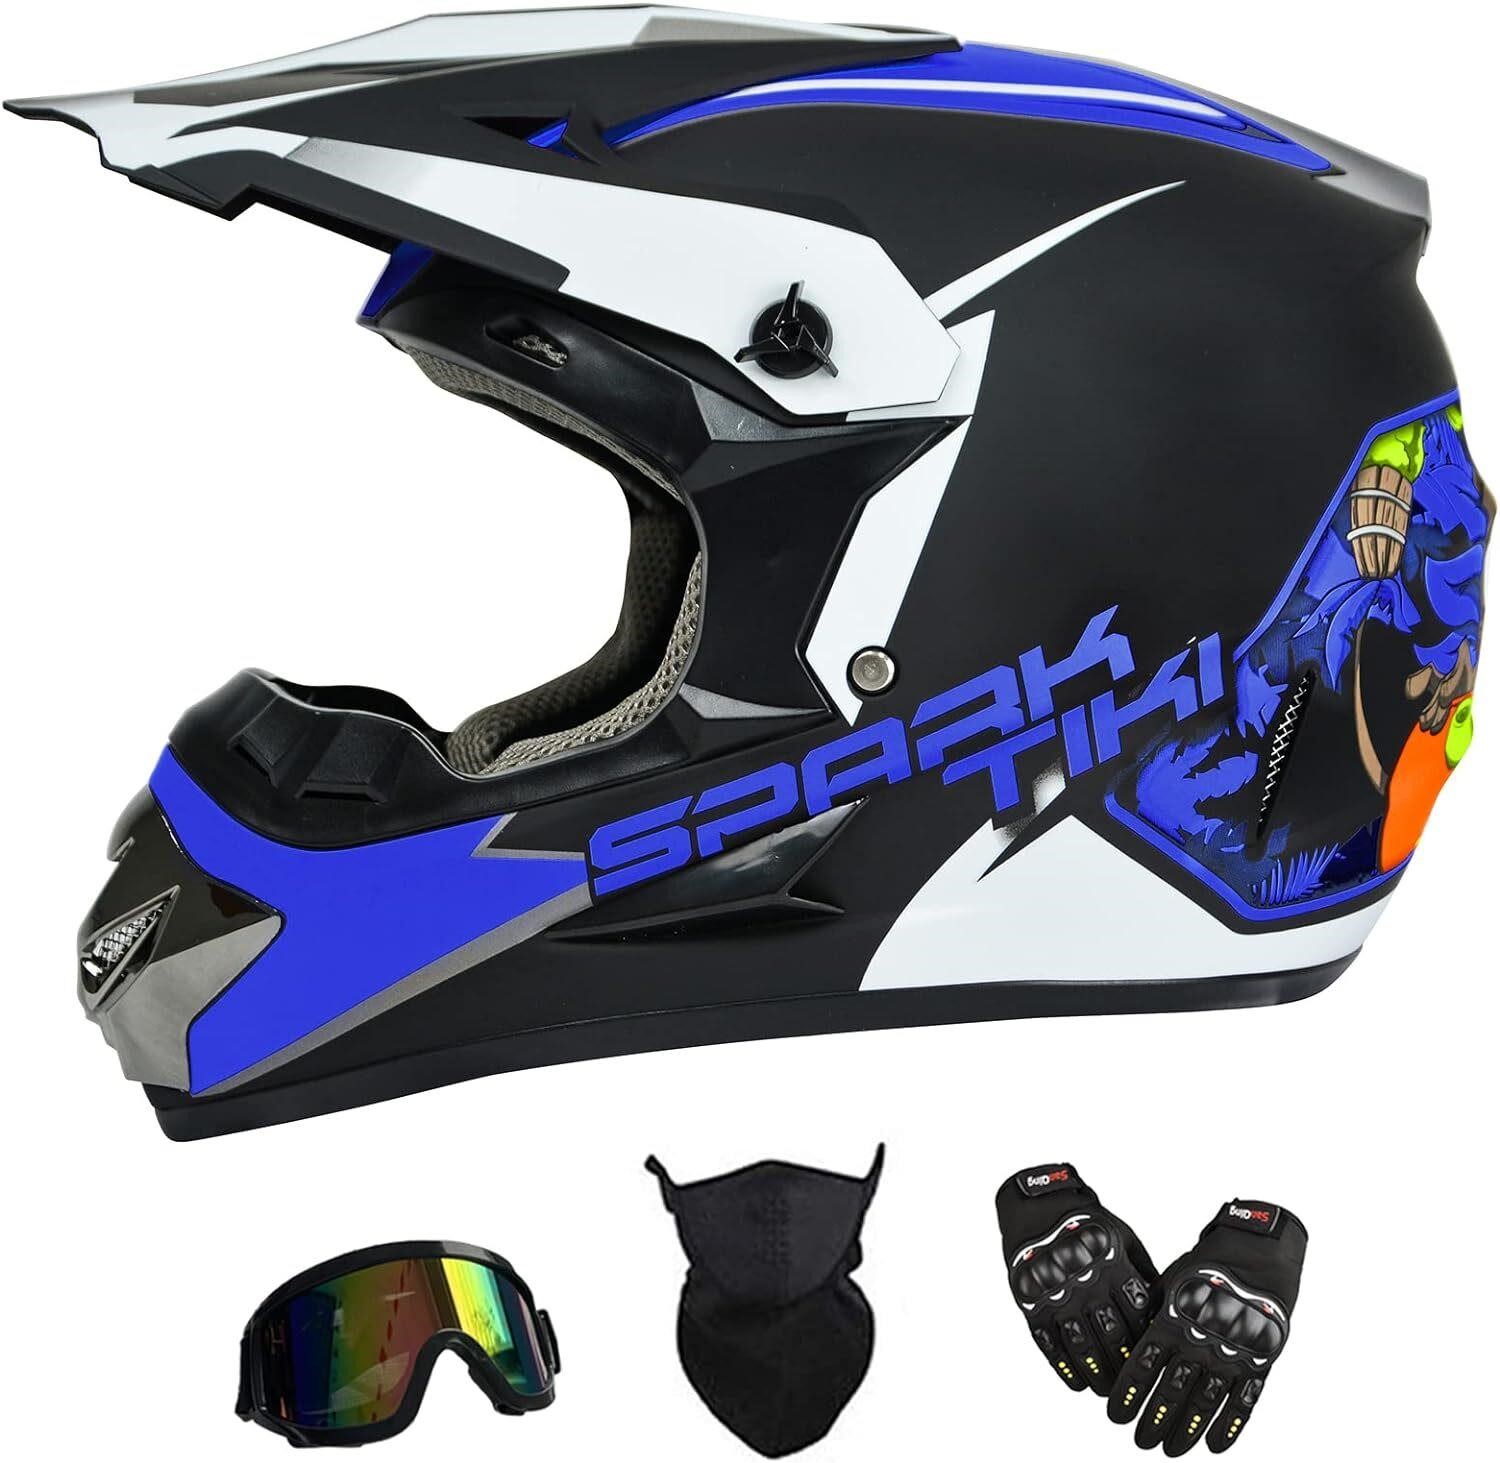 Kids Motocross Helmet  ATV  X-Large